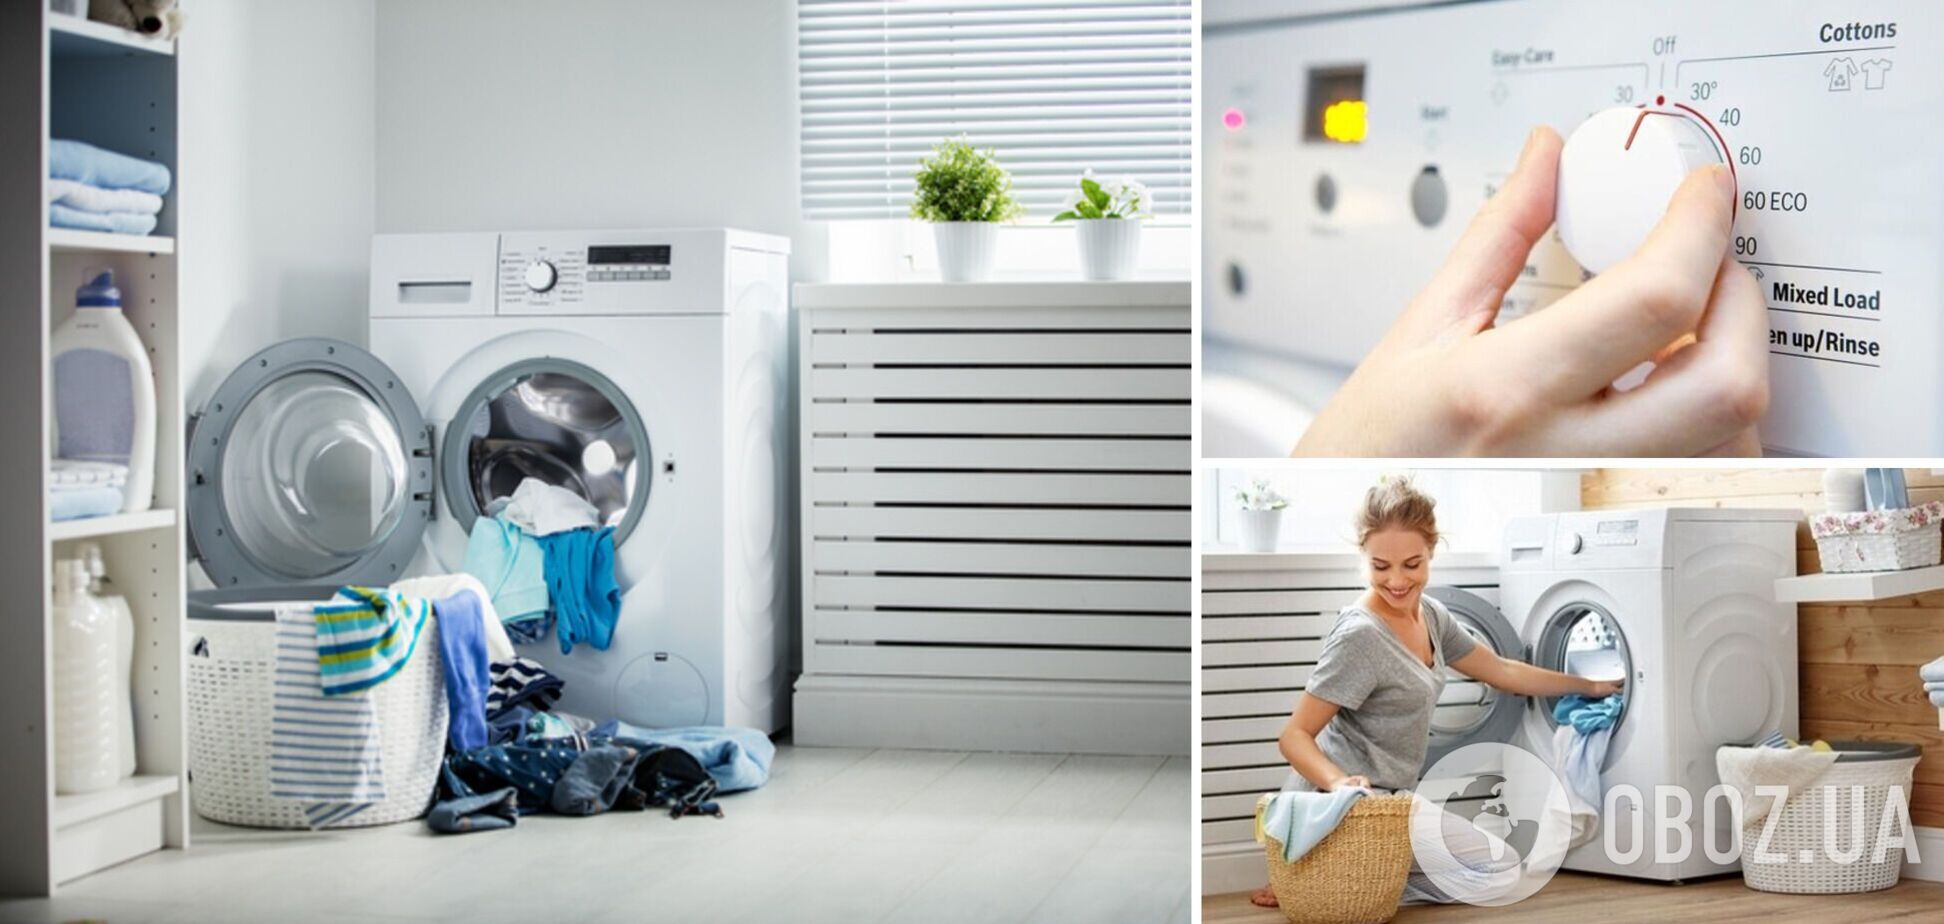 Какой режим в стиральной машинке использовать не надо: одежда останется грязной